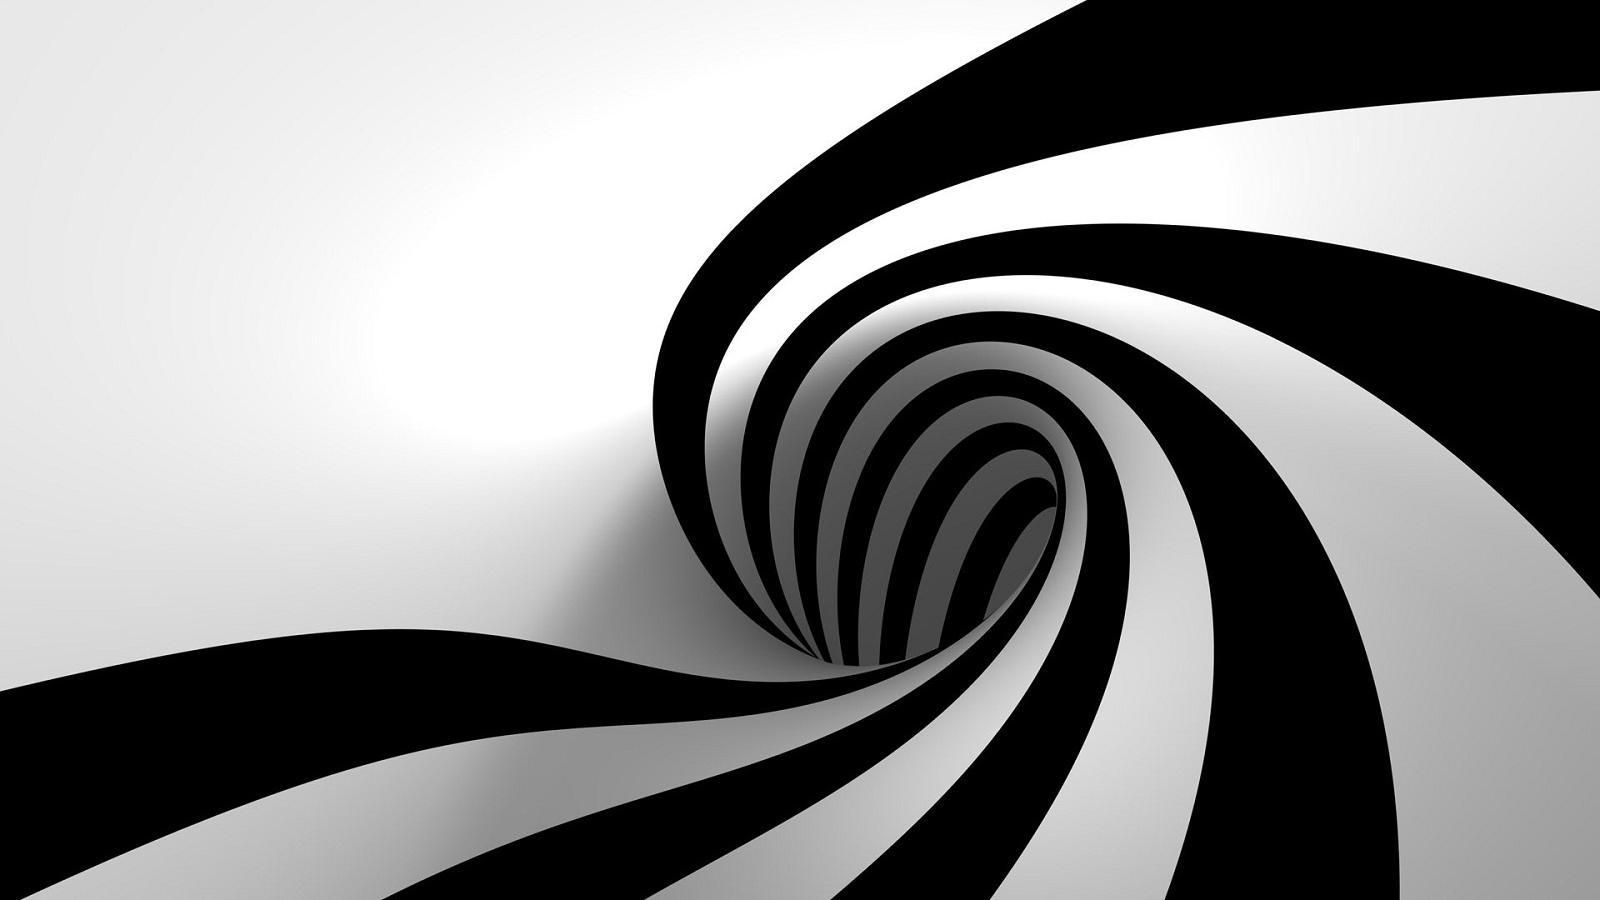 spiral_optical_illusions_3d_desktop_1600x900_hd-wallpaper-837961.jpg